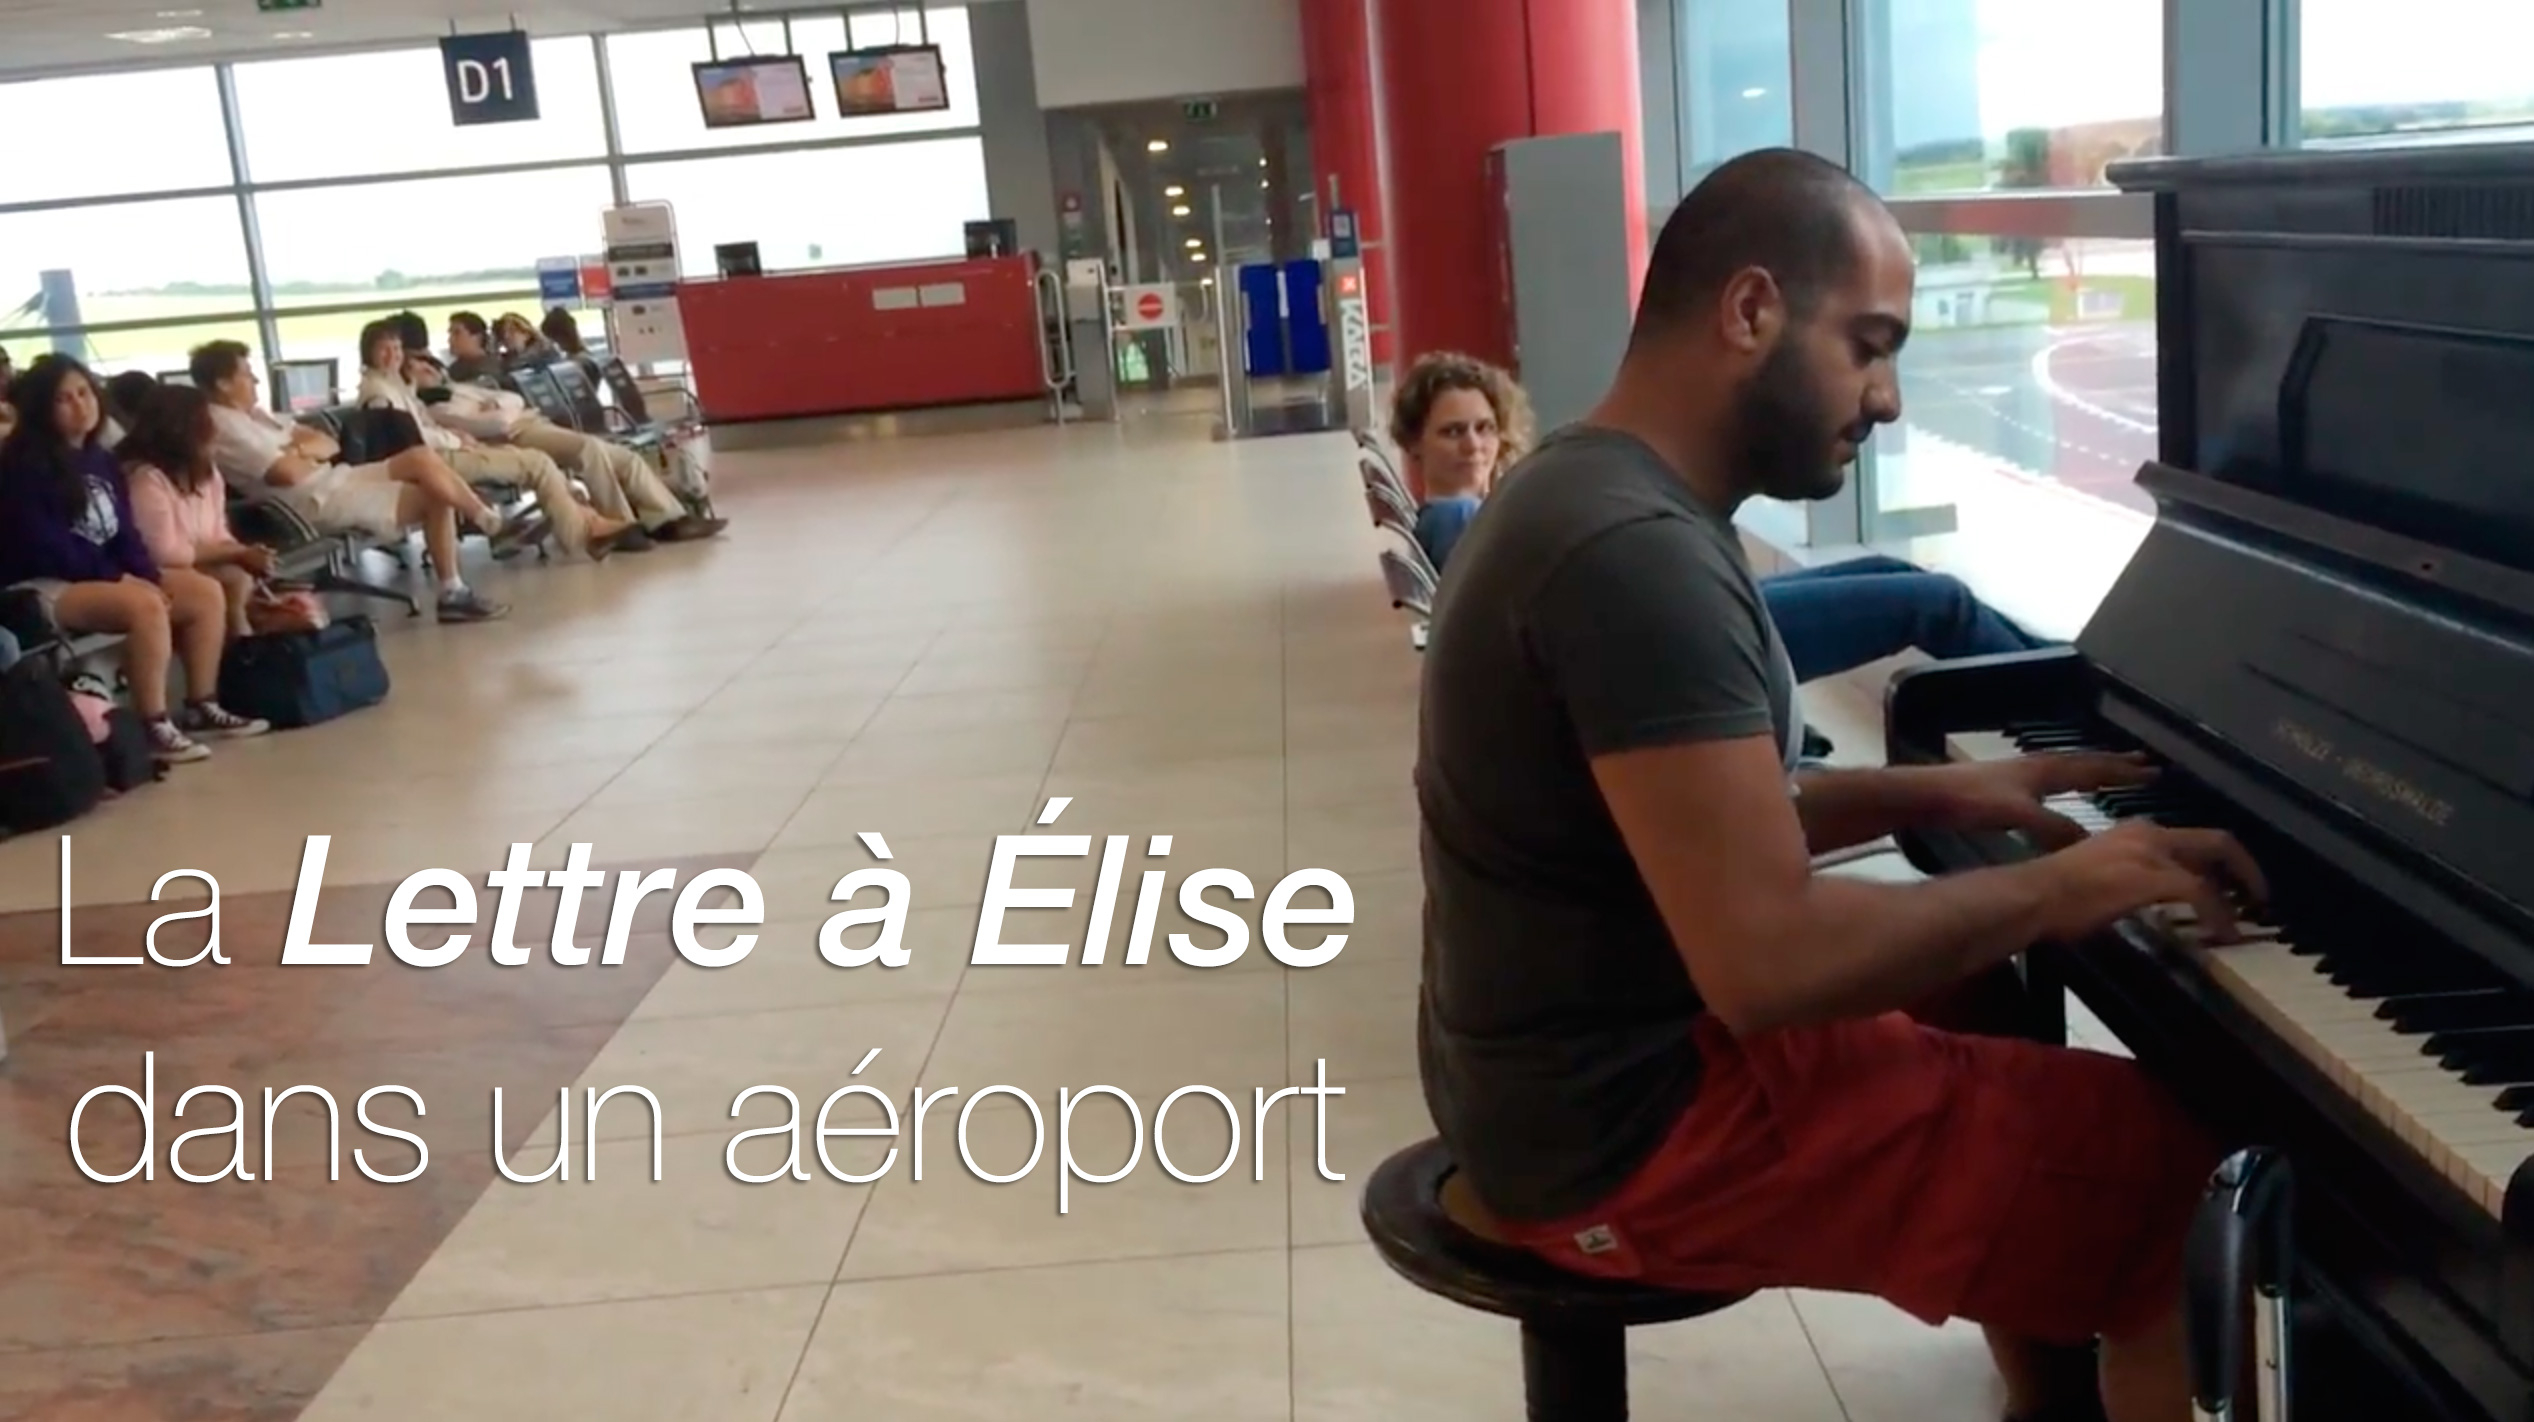 Versions de Lettre a Elise dans un aeroport